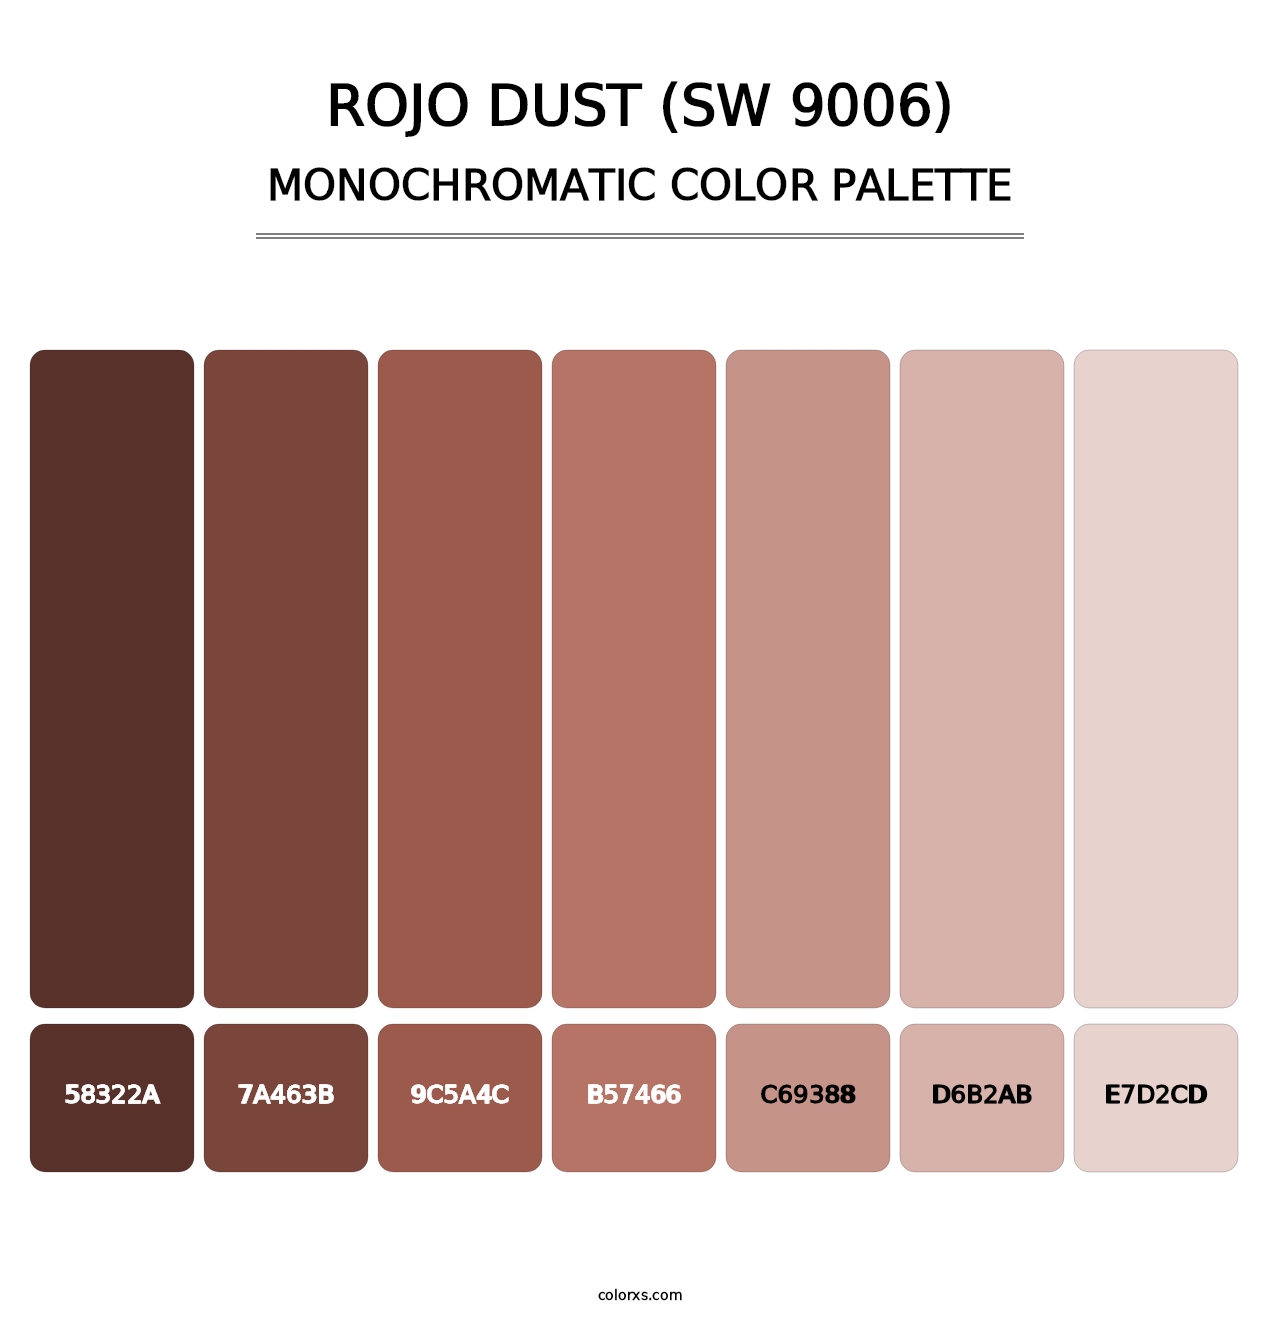 Rojo Dust (SW 9006) - Monochromatic Color Palette